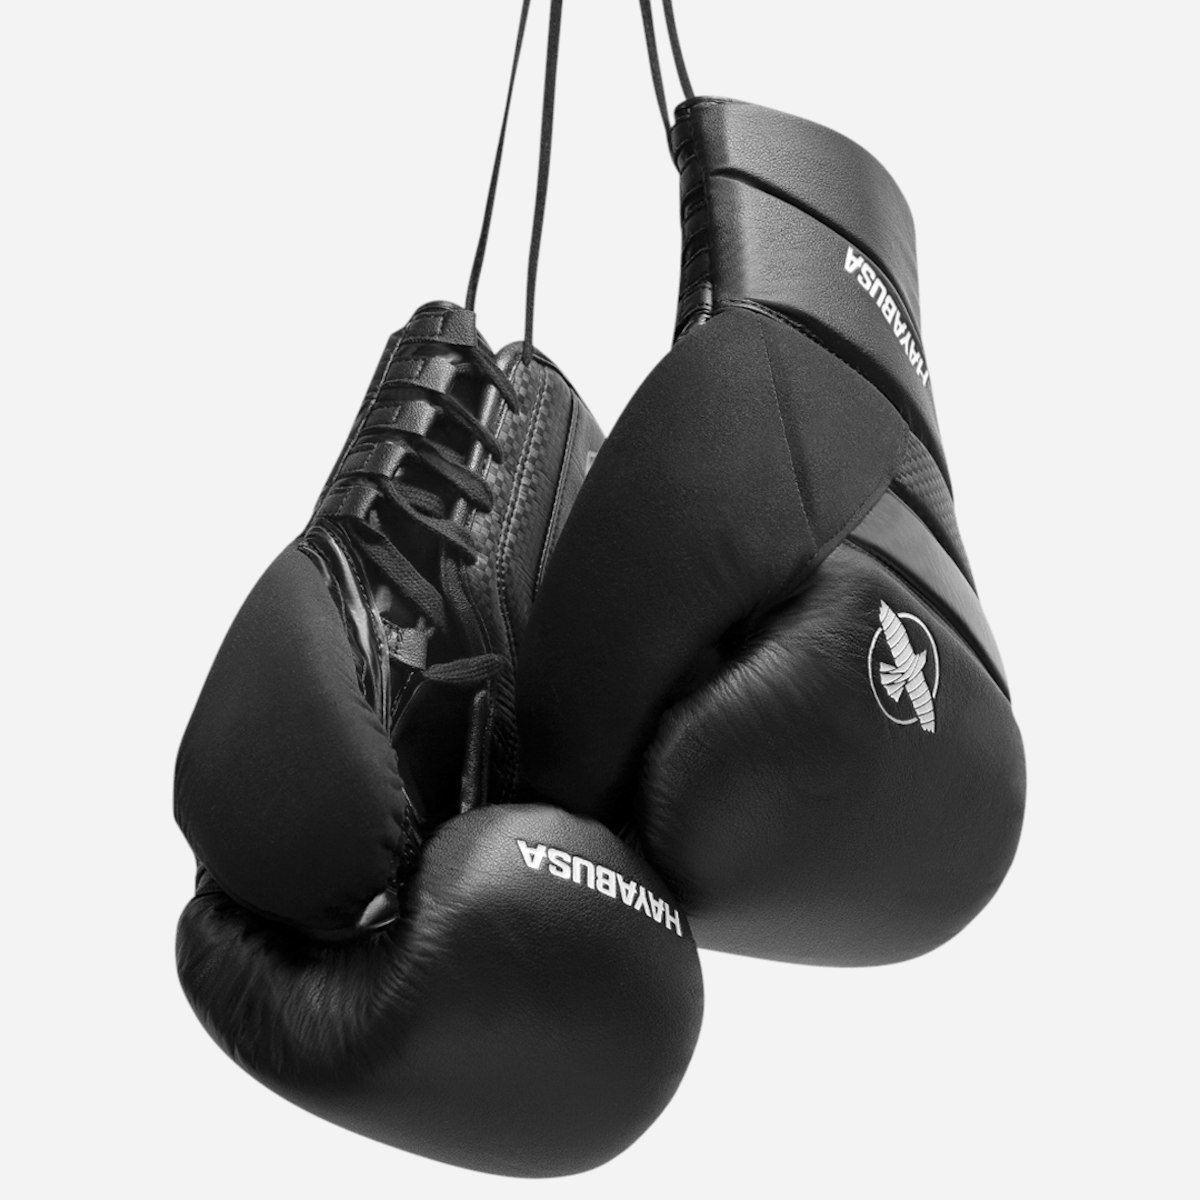 Boxers, Accessories, TM